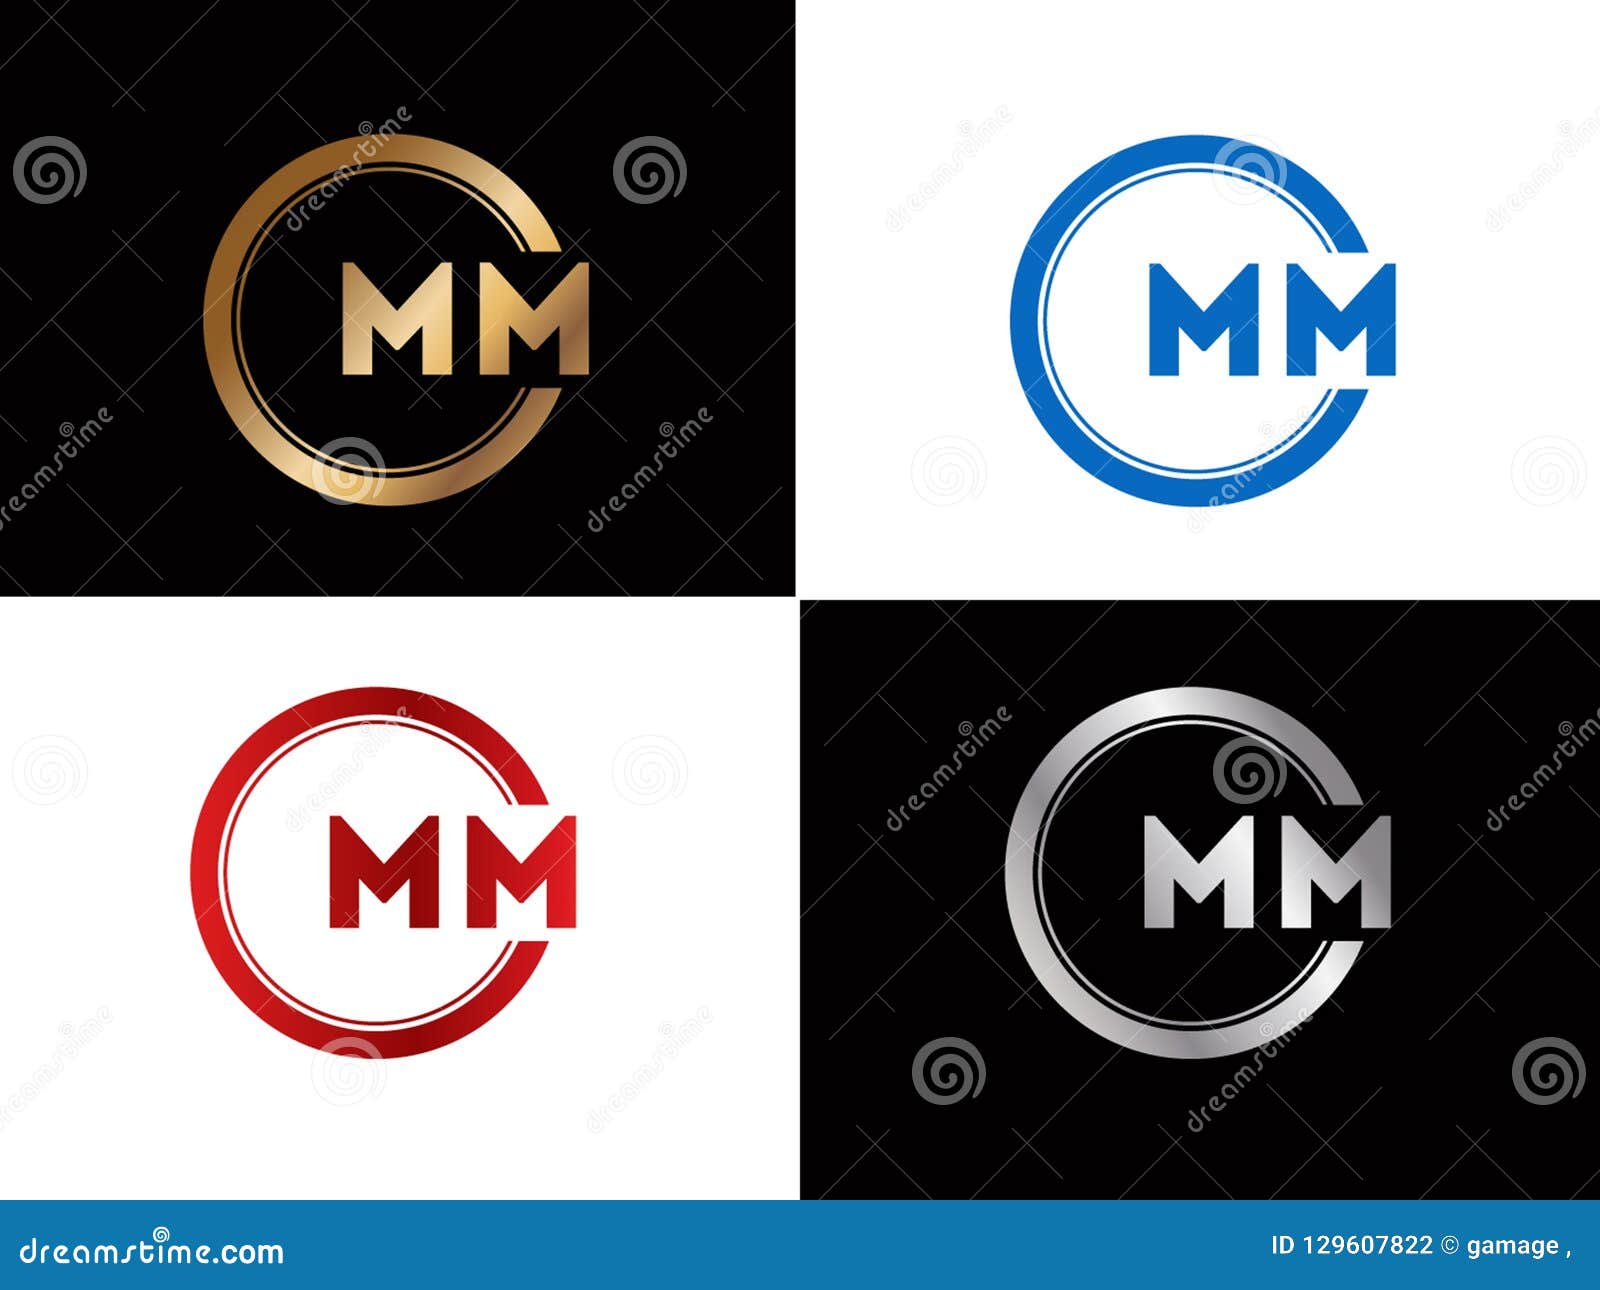 Mm Logo Silver Stock Illustrations – 66 Mm Logo Silver Stock Illustrations,  Vectors & Clipart - Dreamstime